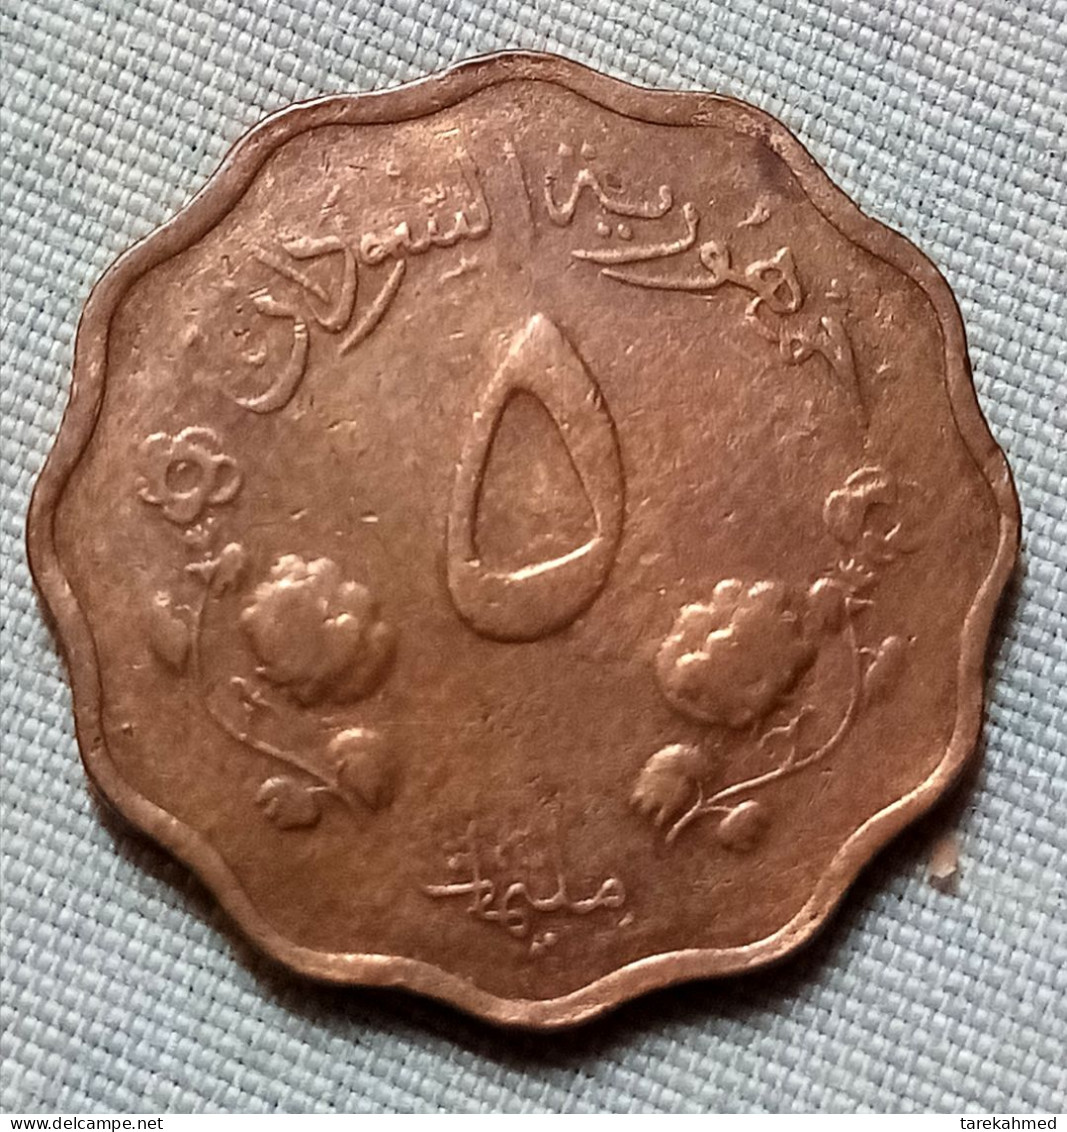 Sudan 1962 , 5 Milliemes , UNC , agouz